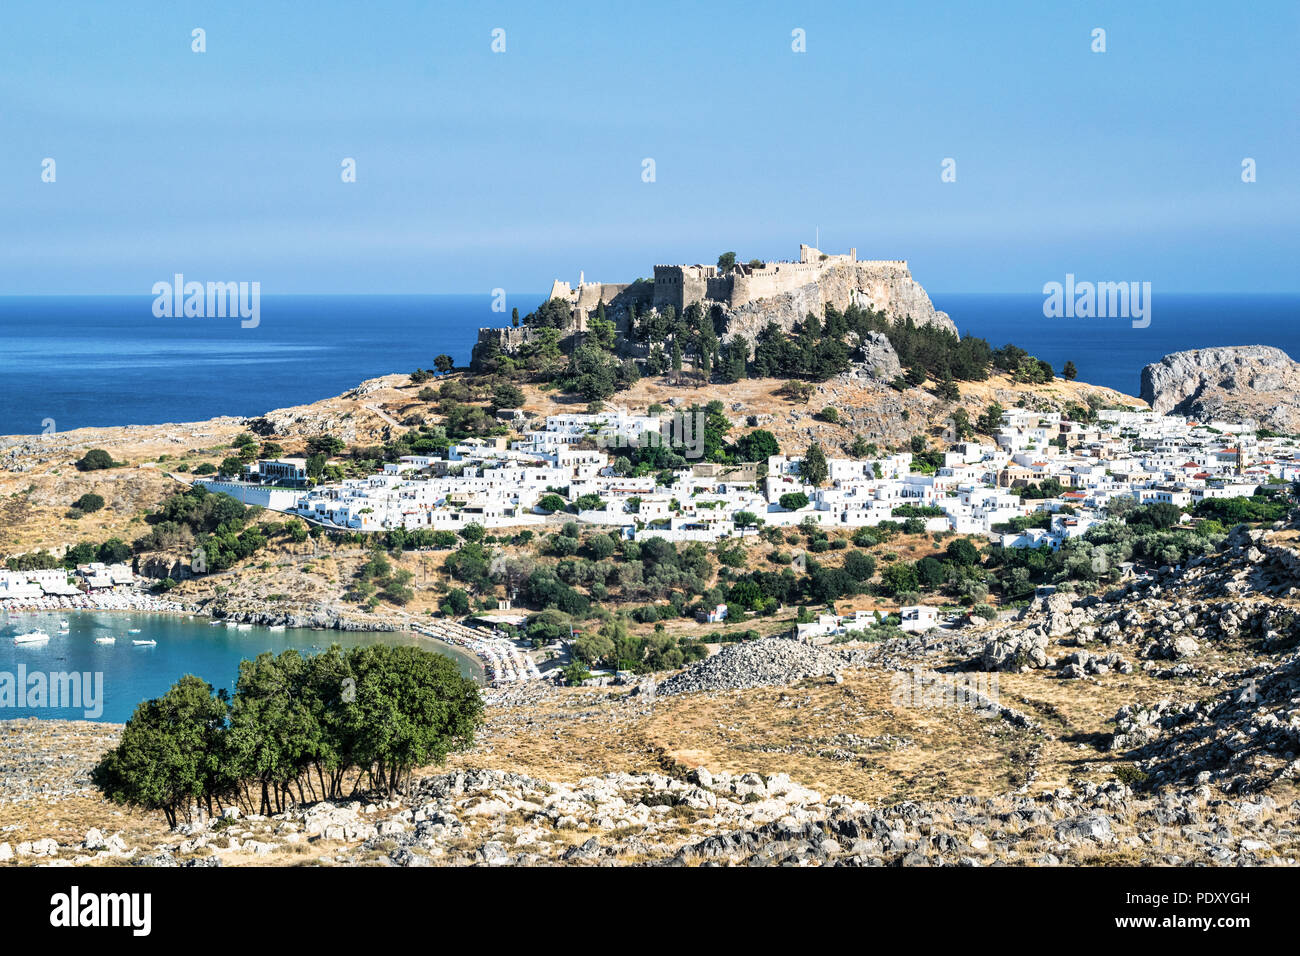 Das ist ein Bild von dem Dorf Lindos auf der griechischen Insel Rhodos im Ägäischen Meer. Stockfoto